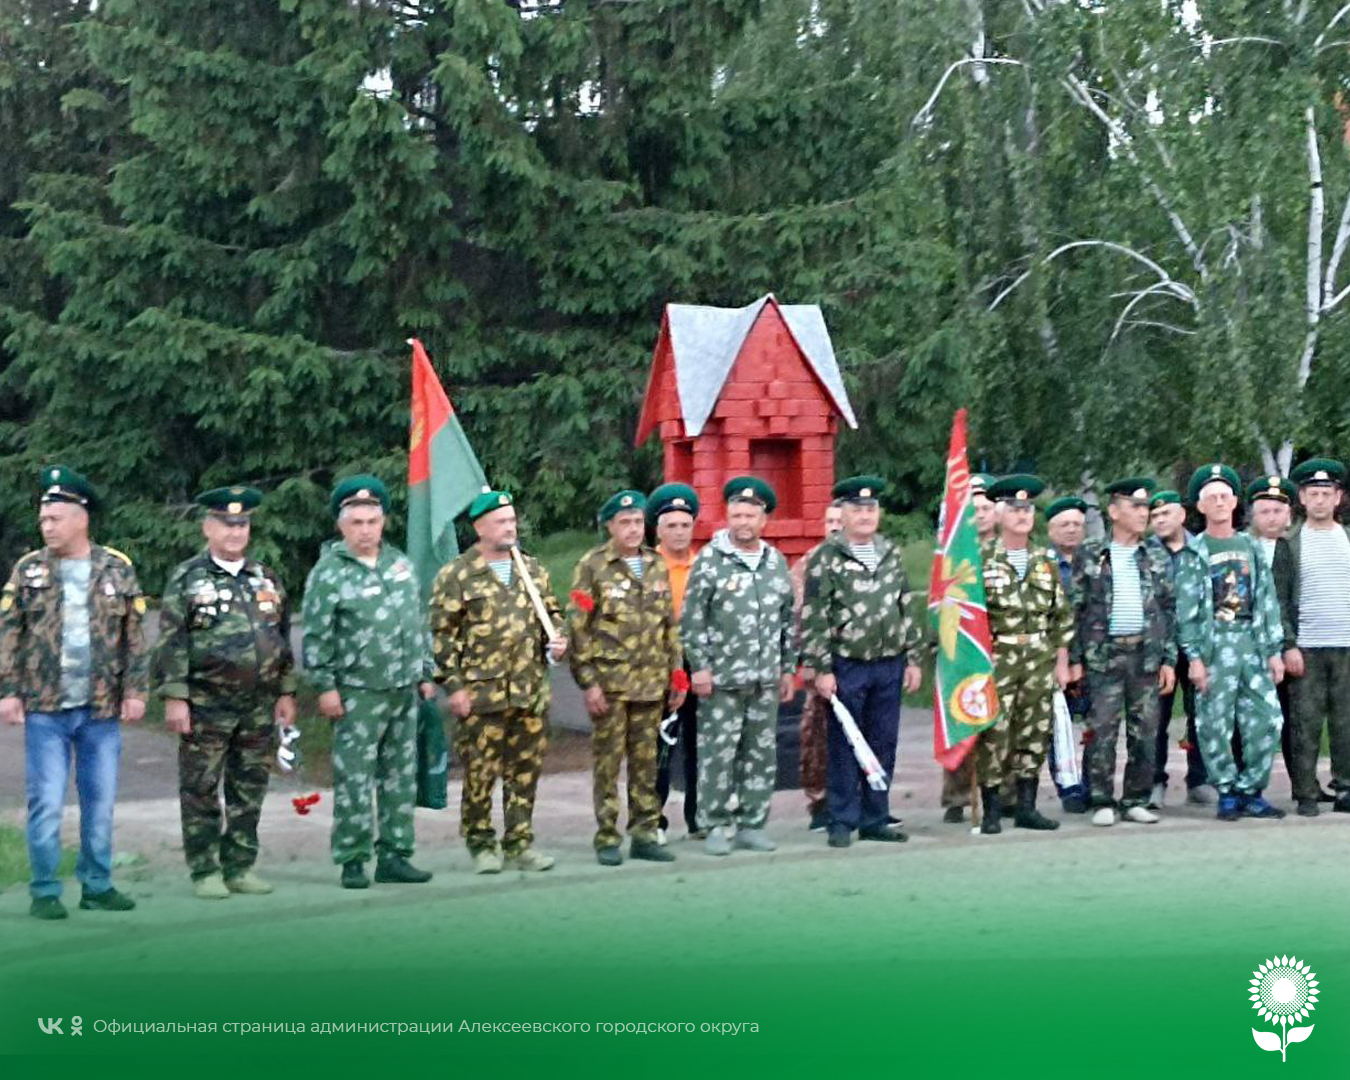 Работники культуры оказали помощь ветеранам-пограничникам и организовали торжественную церемонию возложение цветов к мемориалу Солдатской славы